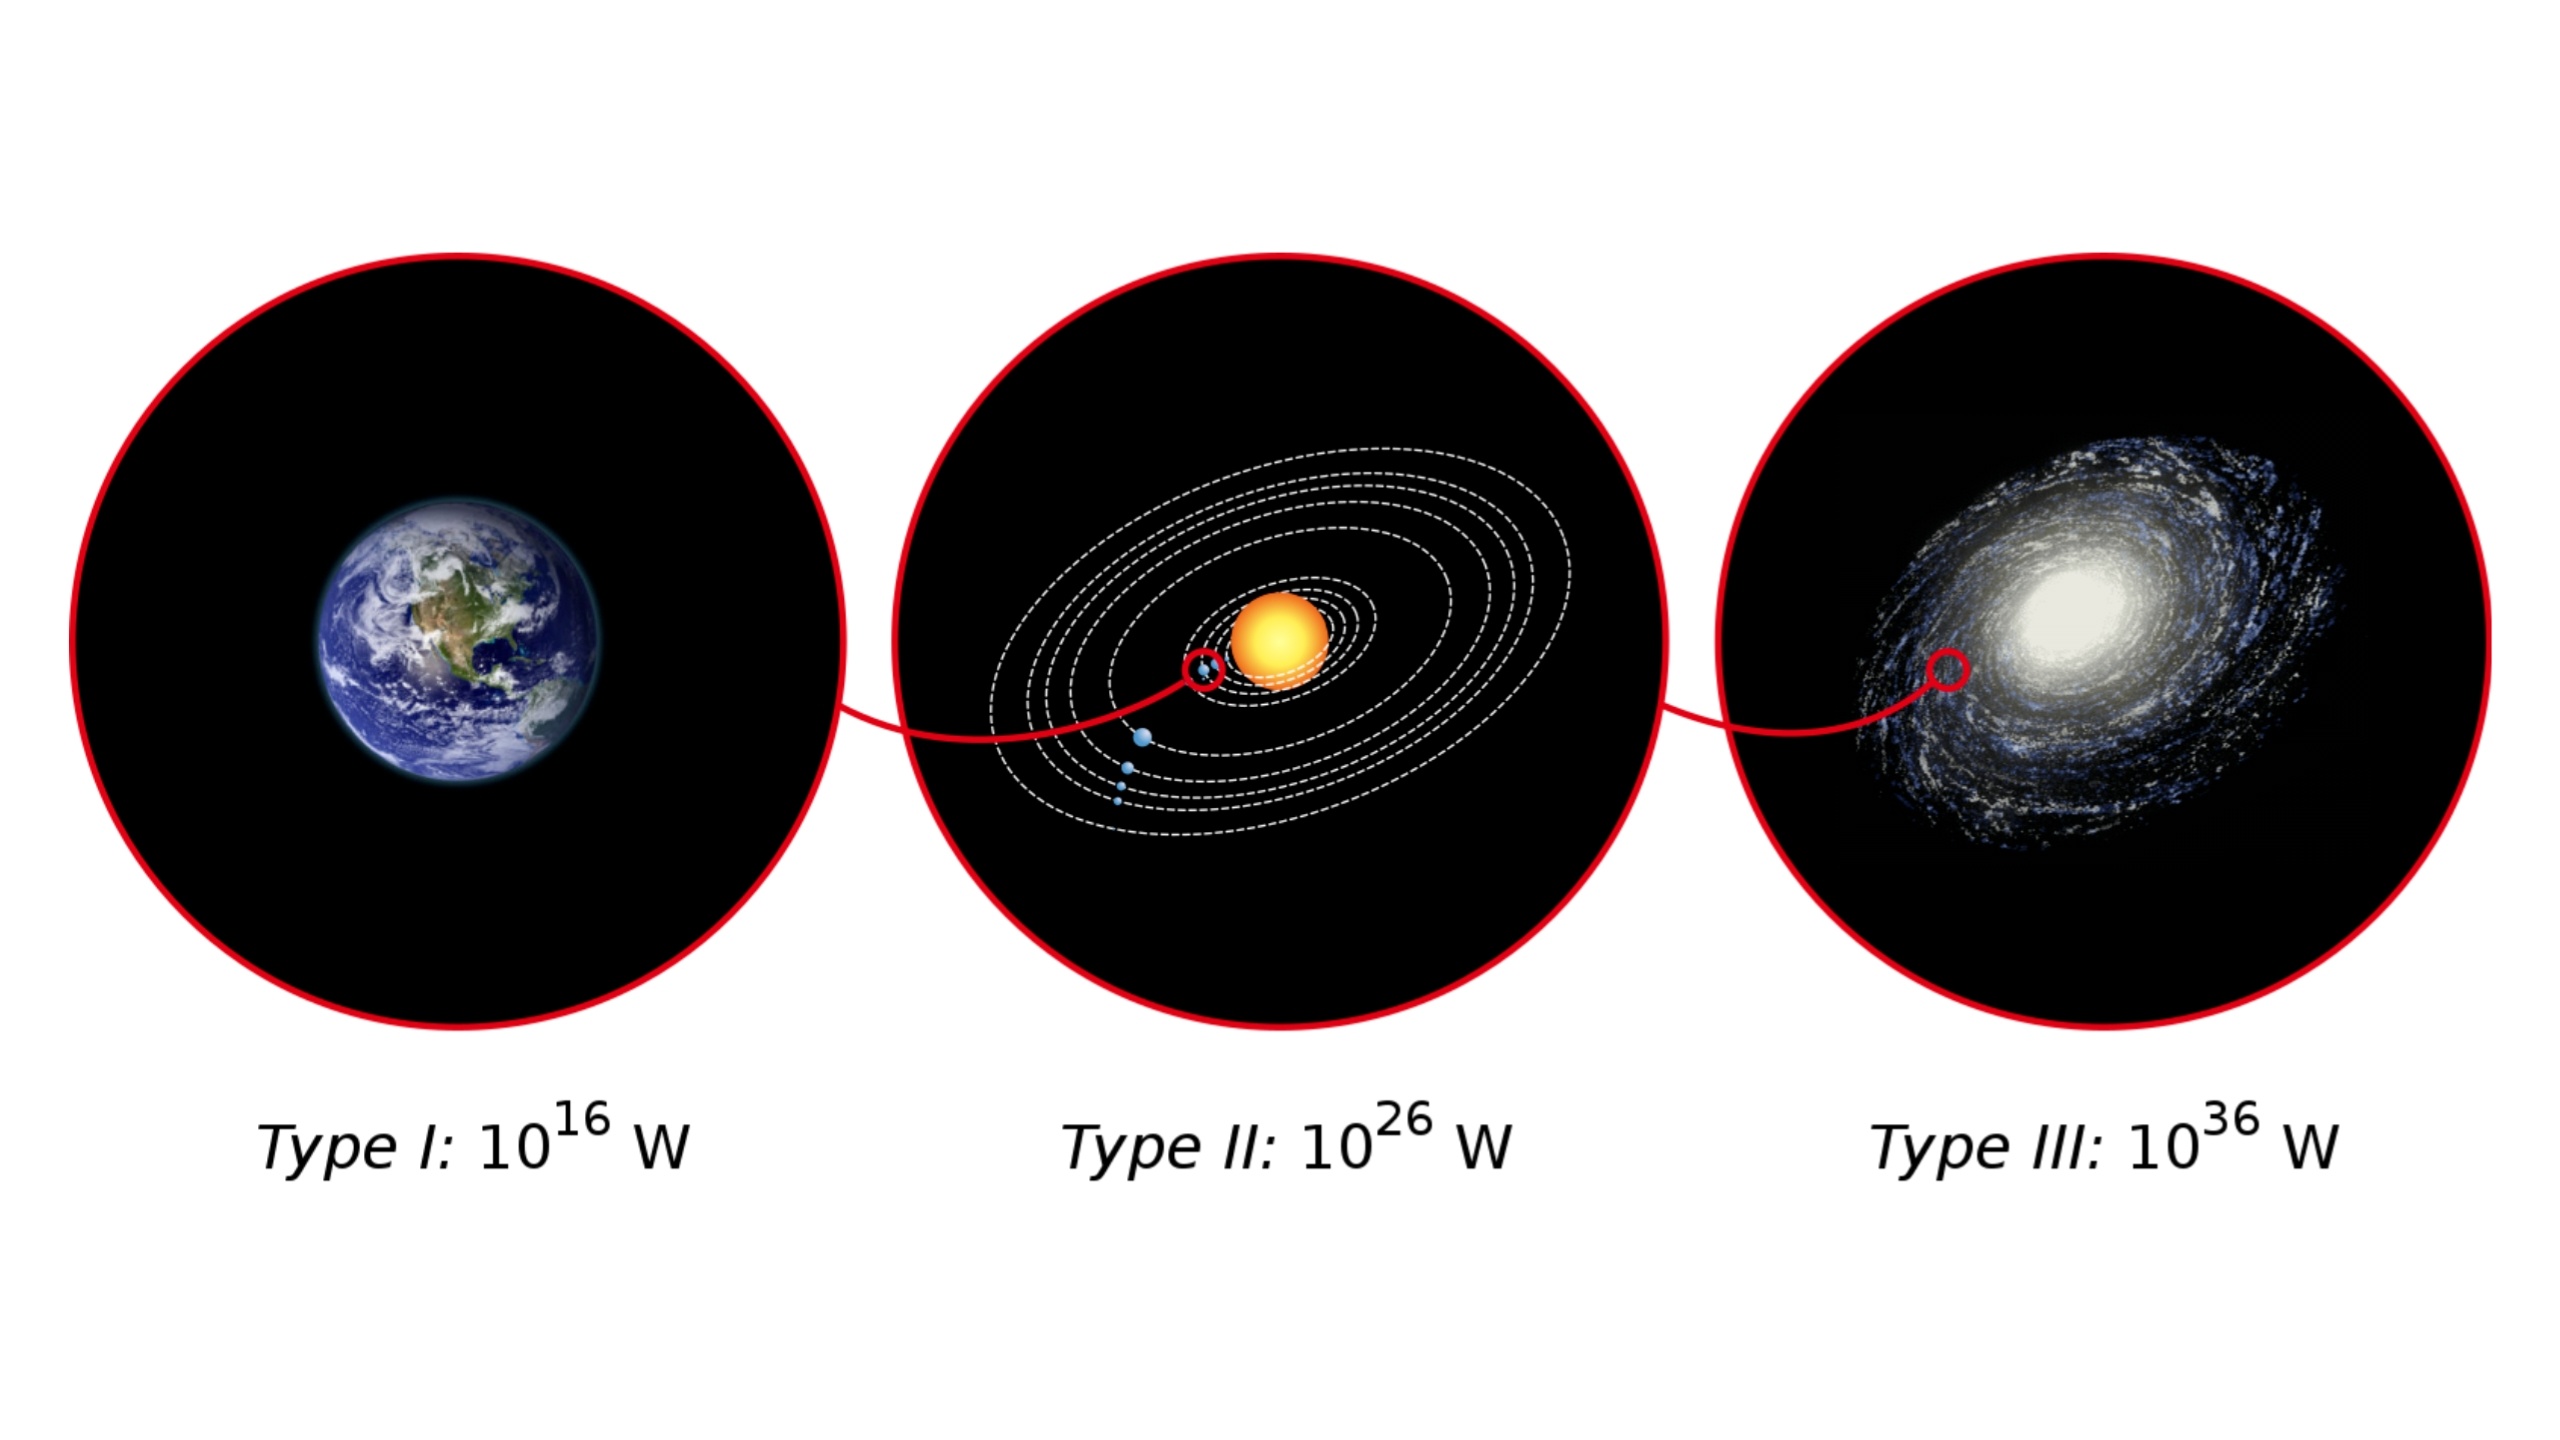 Tiêu thụ năng lượng trong ba loại hình văn minh được xác định theo thang Kardashev mở rộng của Sagan